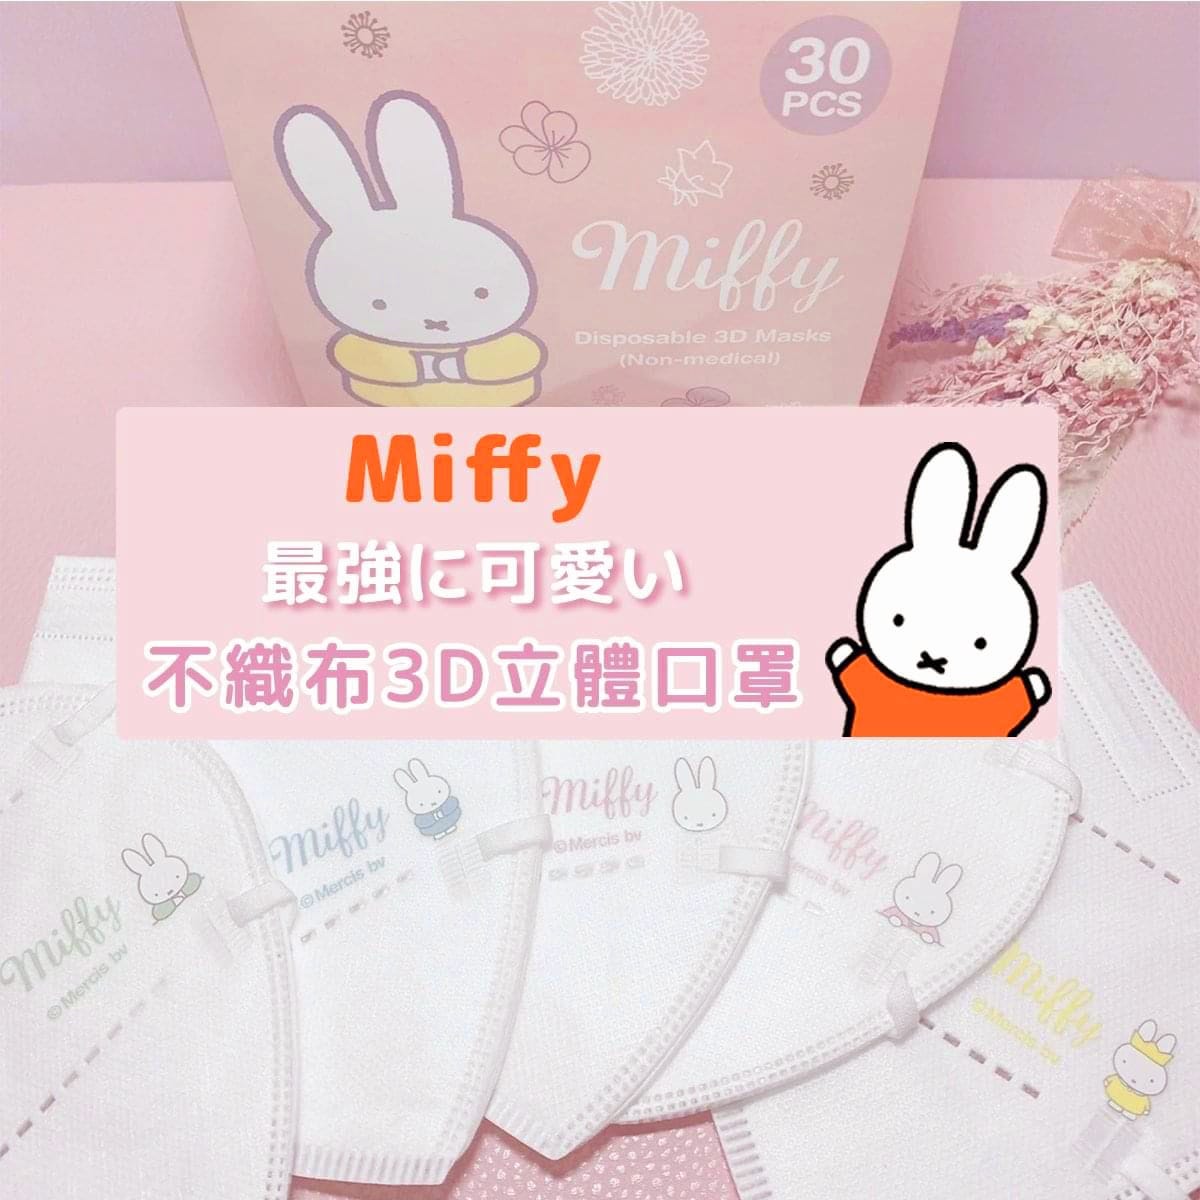 Mask - Miffy Disposable 3D L Size Q5x6 (30pcs) (Japan Edition)